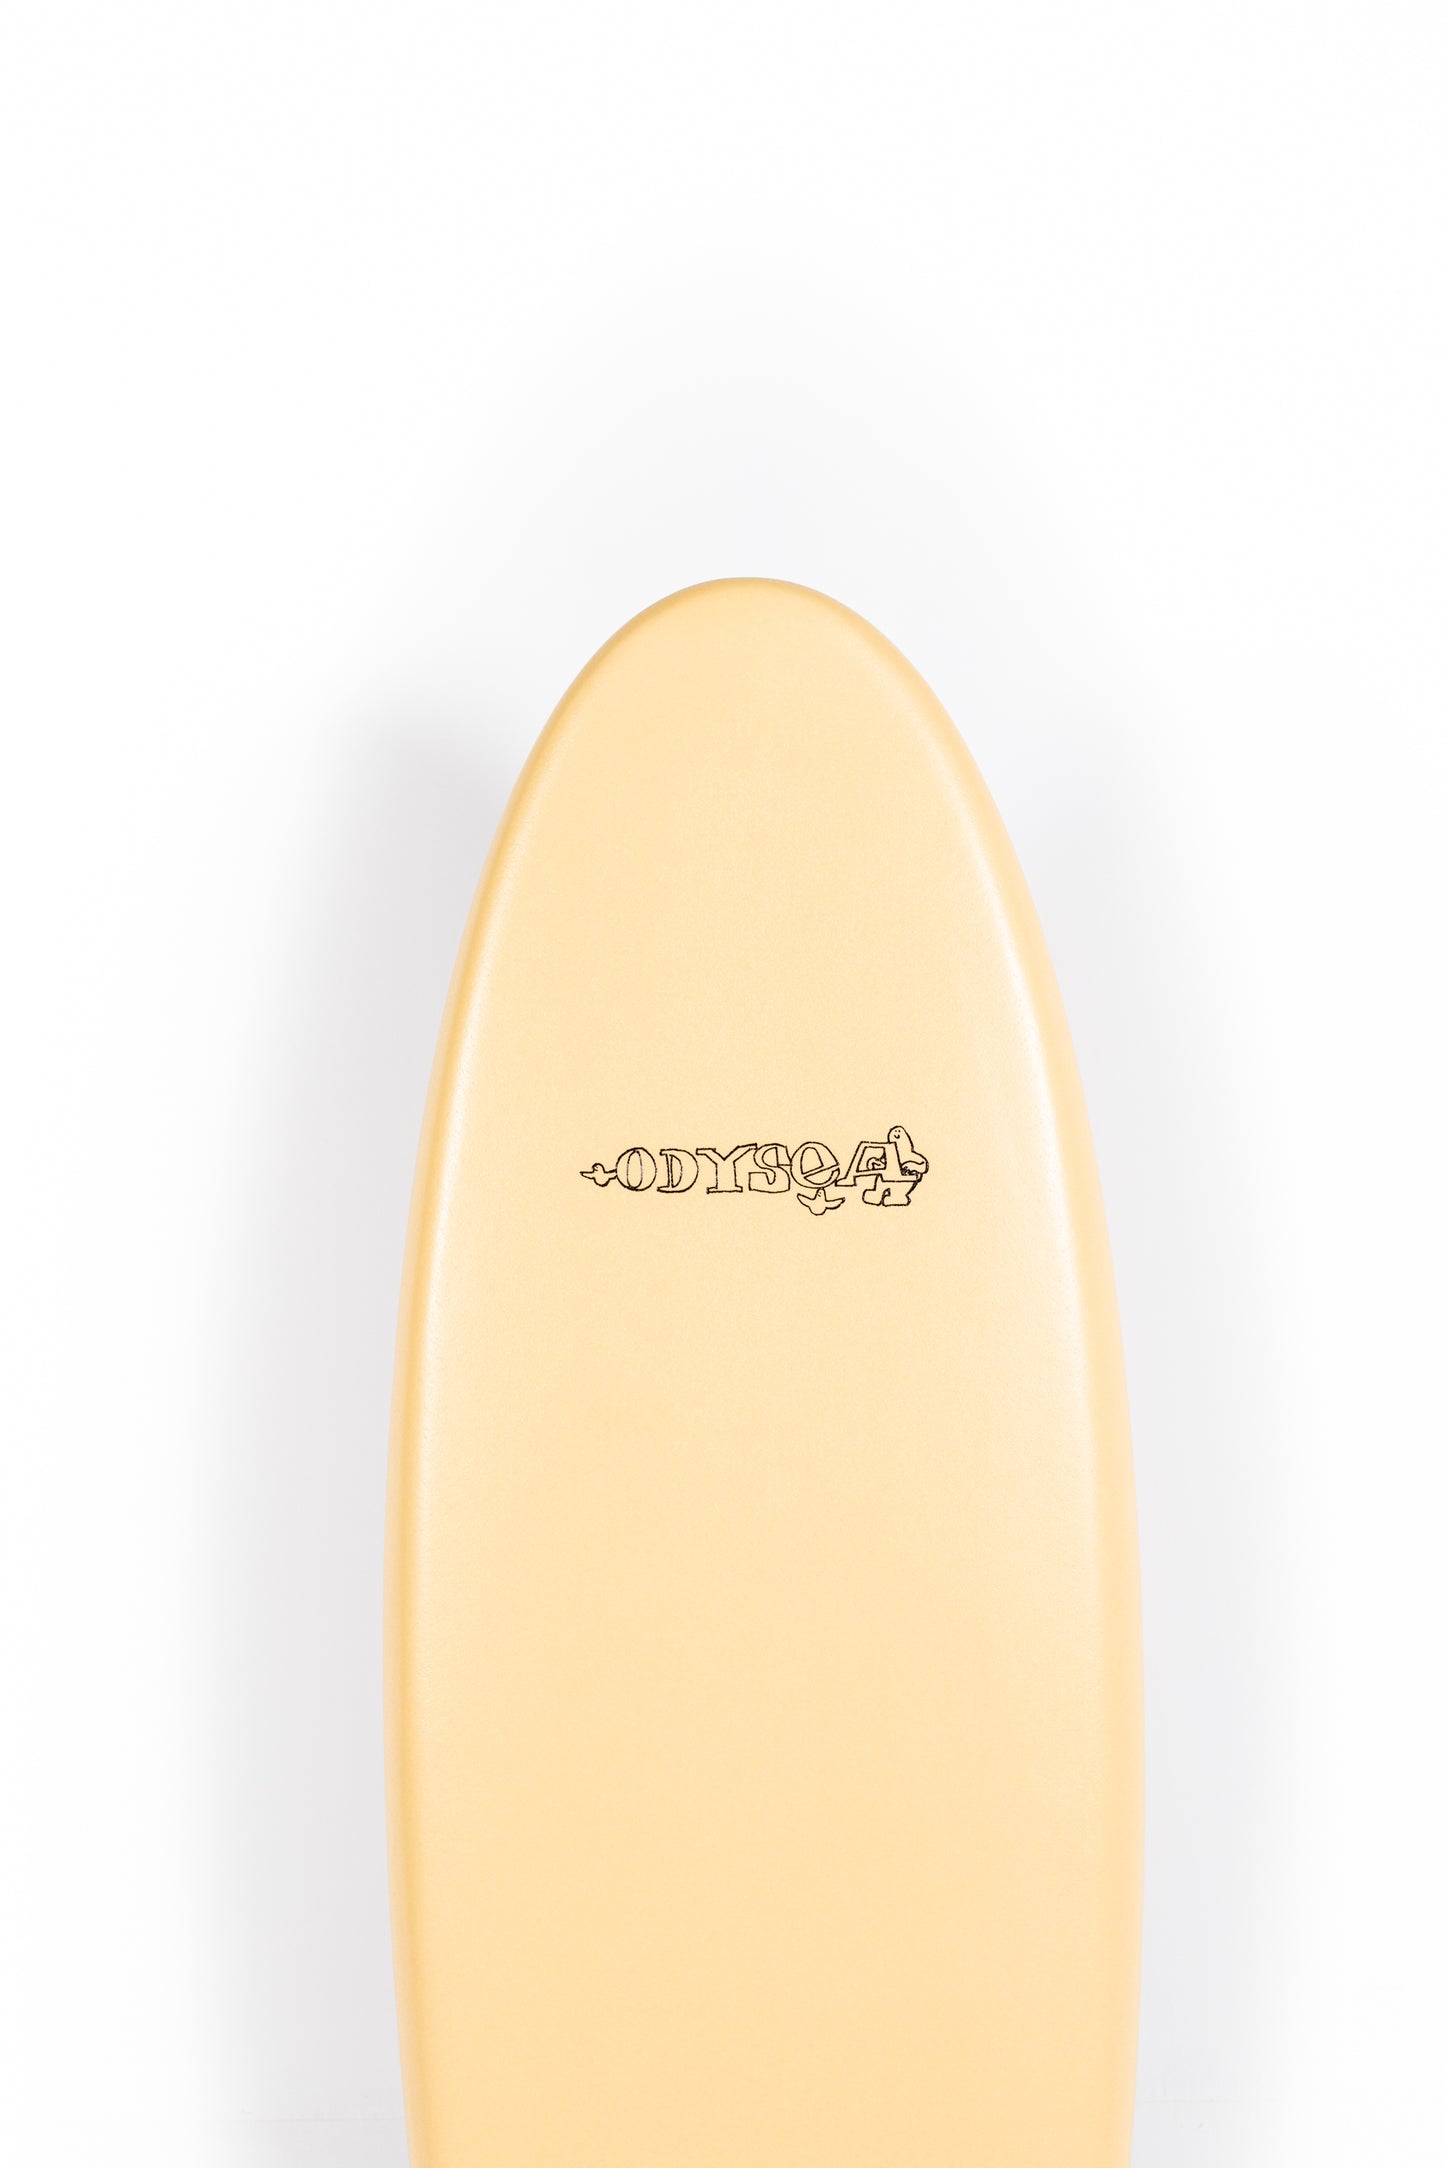 
                  
                    Pukas Surf Shop - Catch Surf - LOG x ERIC KOSTON - 6'0" x 22.0" x 3.125" x 57L
                  
                